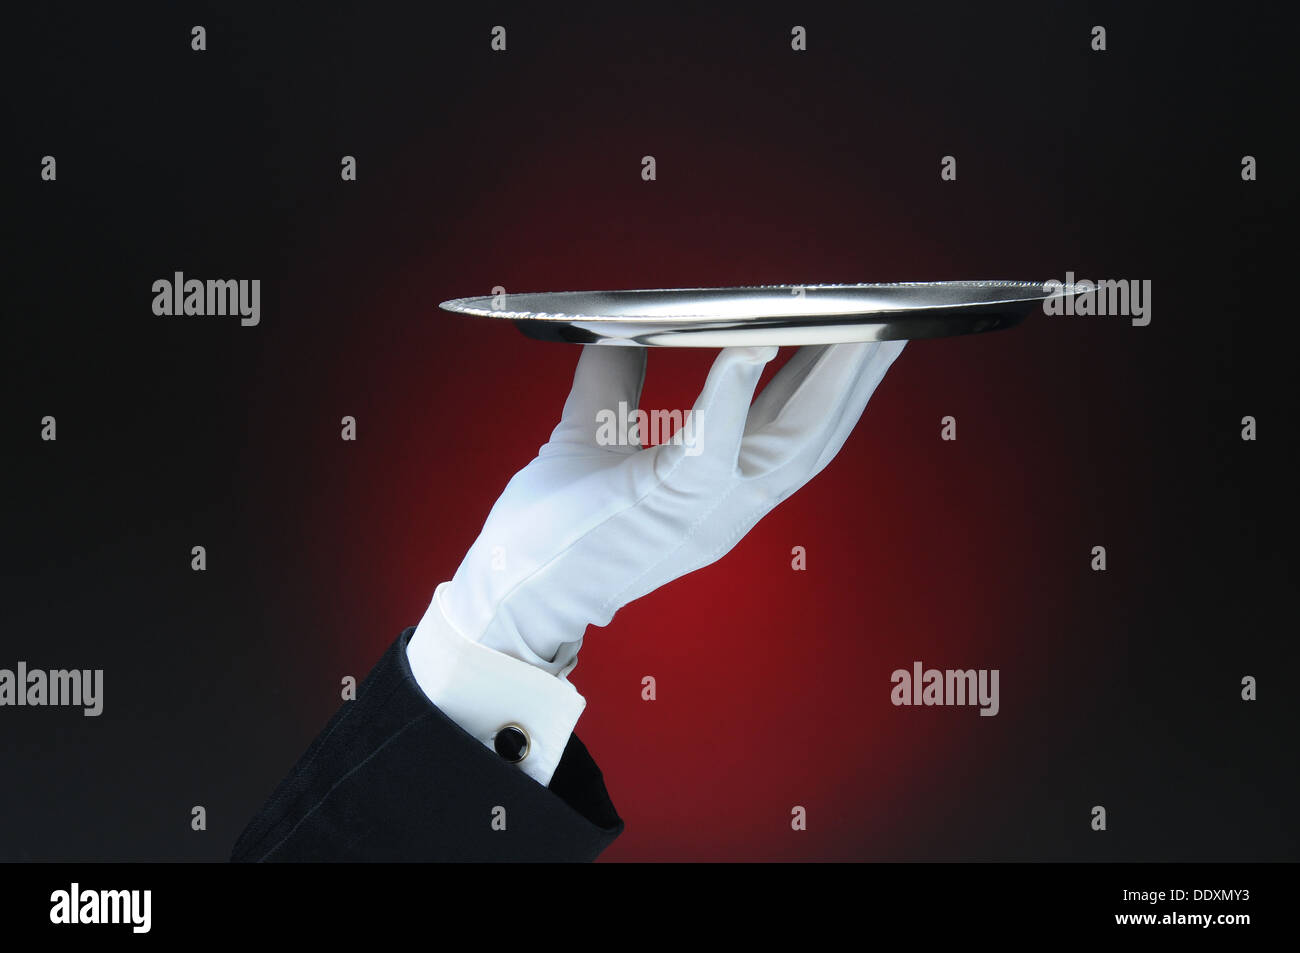 Primo piano di un cameriere la mano che regge un argento che serve il vassoio nella sua mano su una luce di colore rosso scuro dello sfondo. Foto Stock